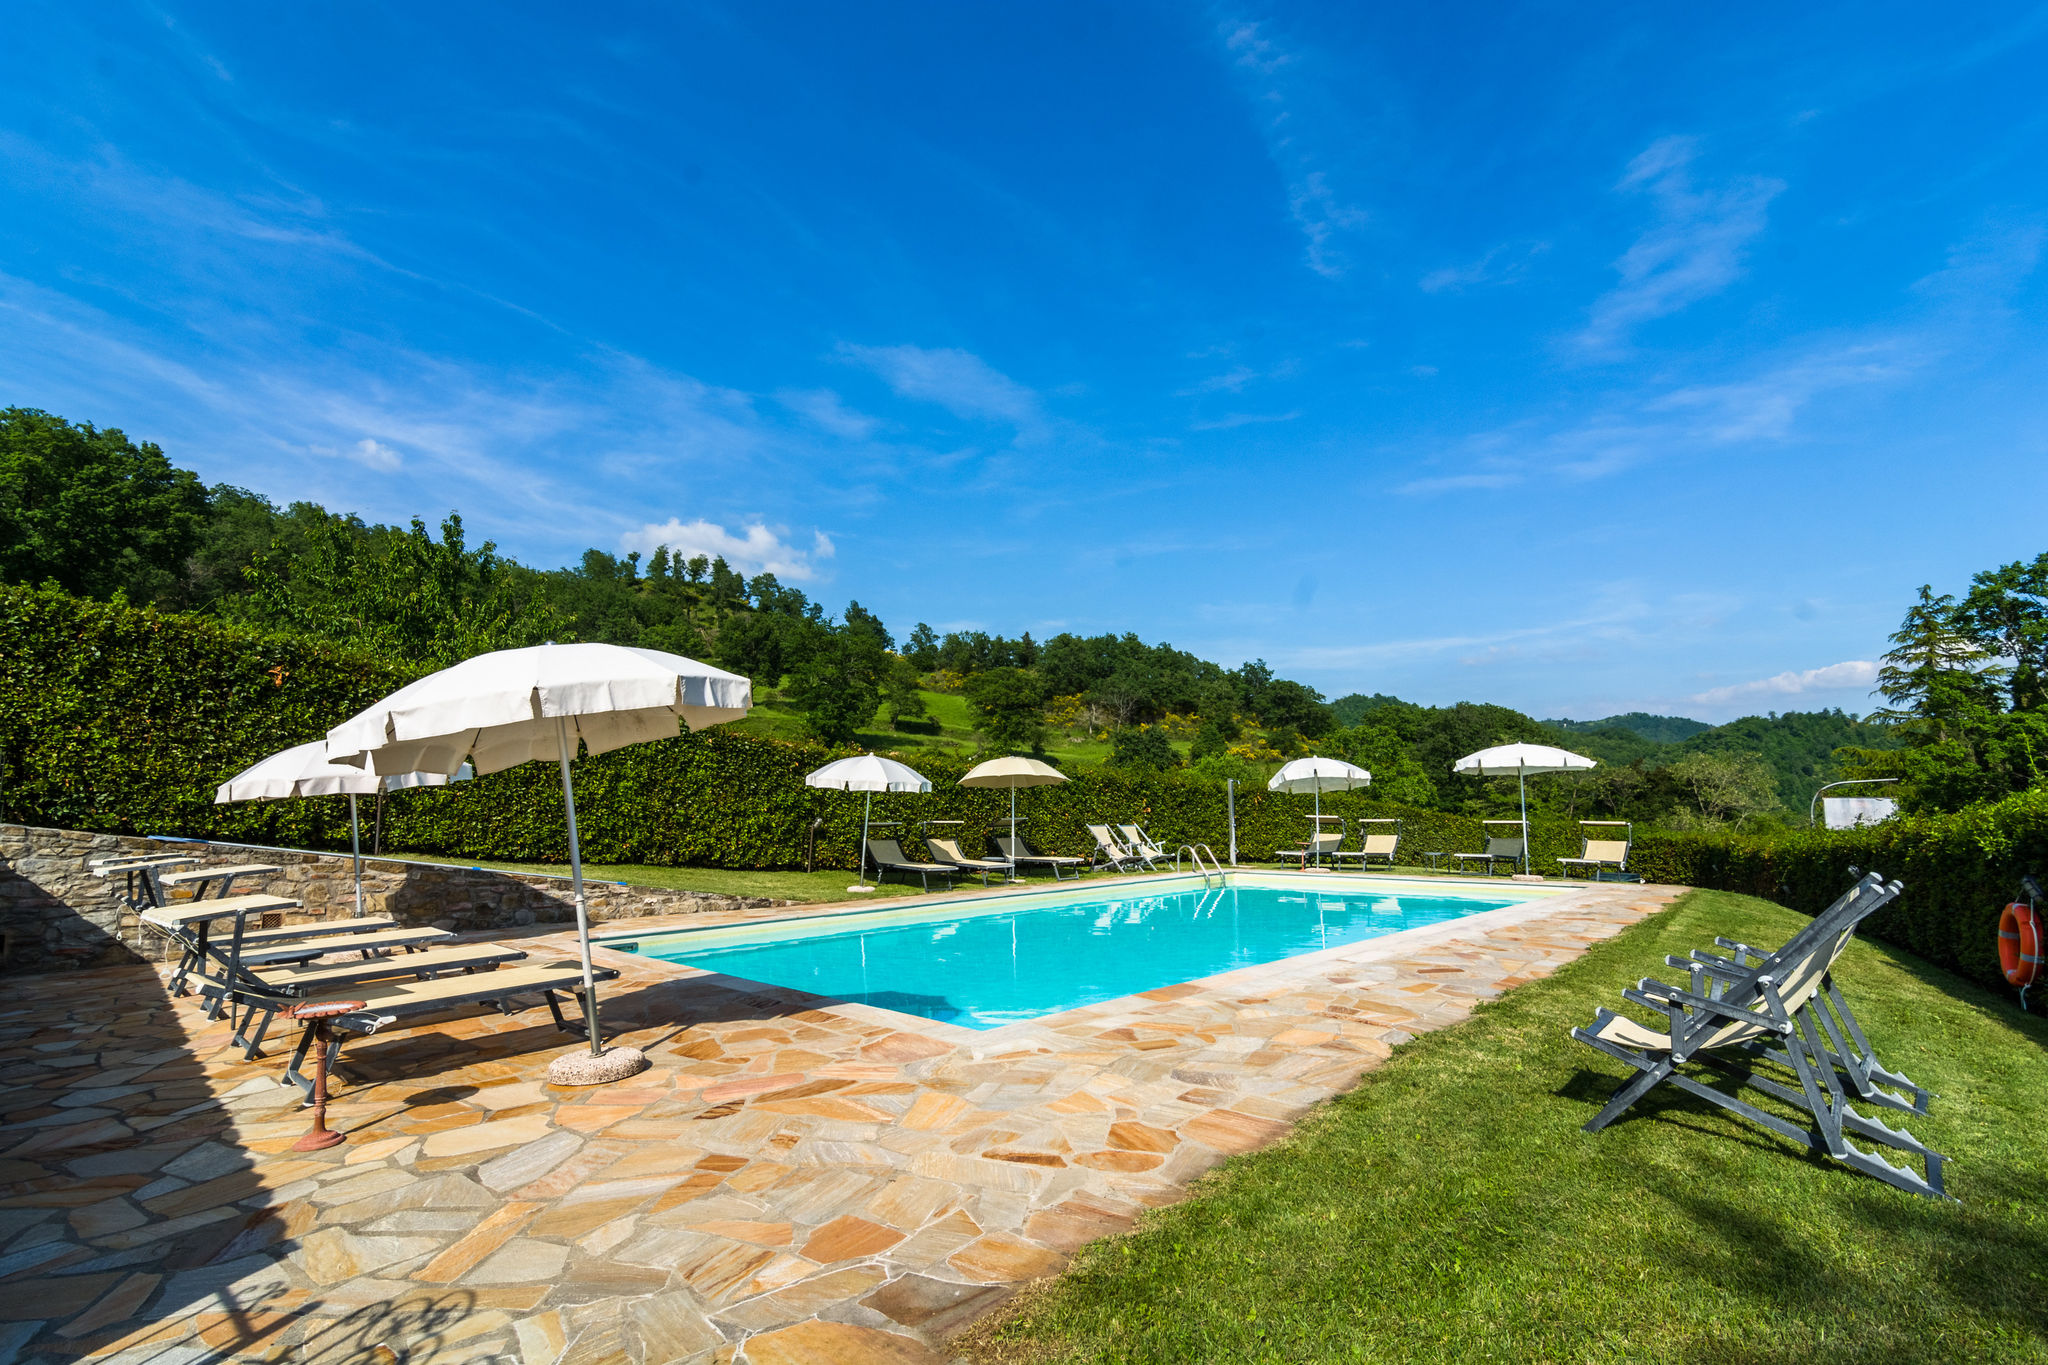 Prachtige villa in Dicomano met gezamenlijk zwembad